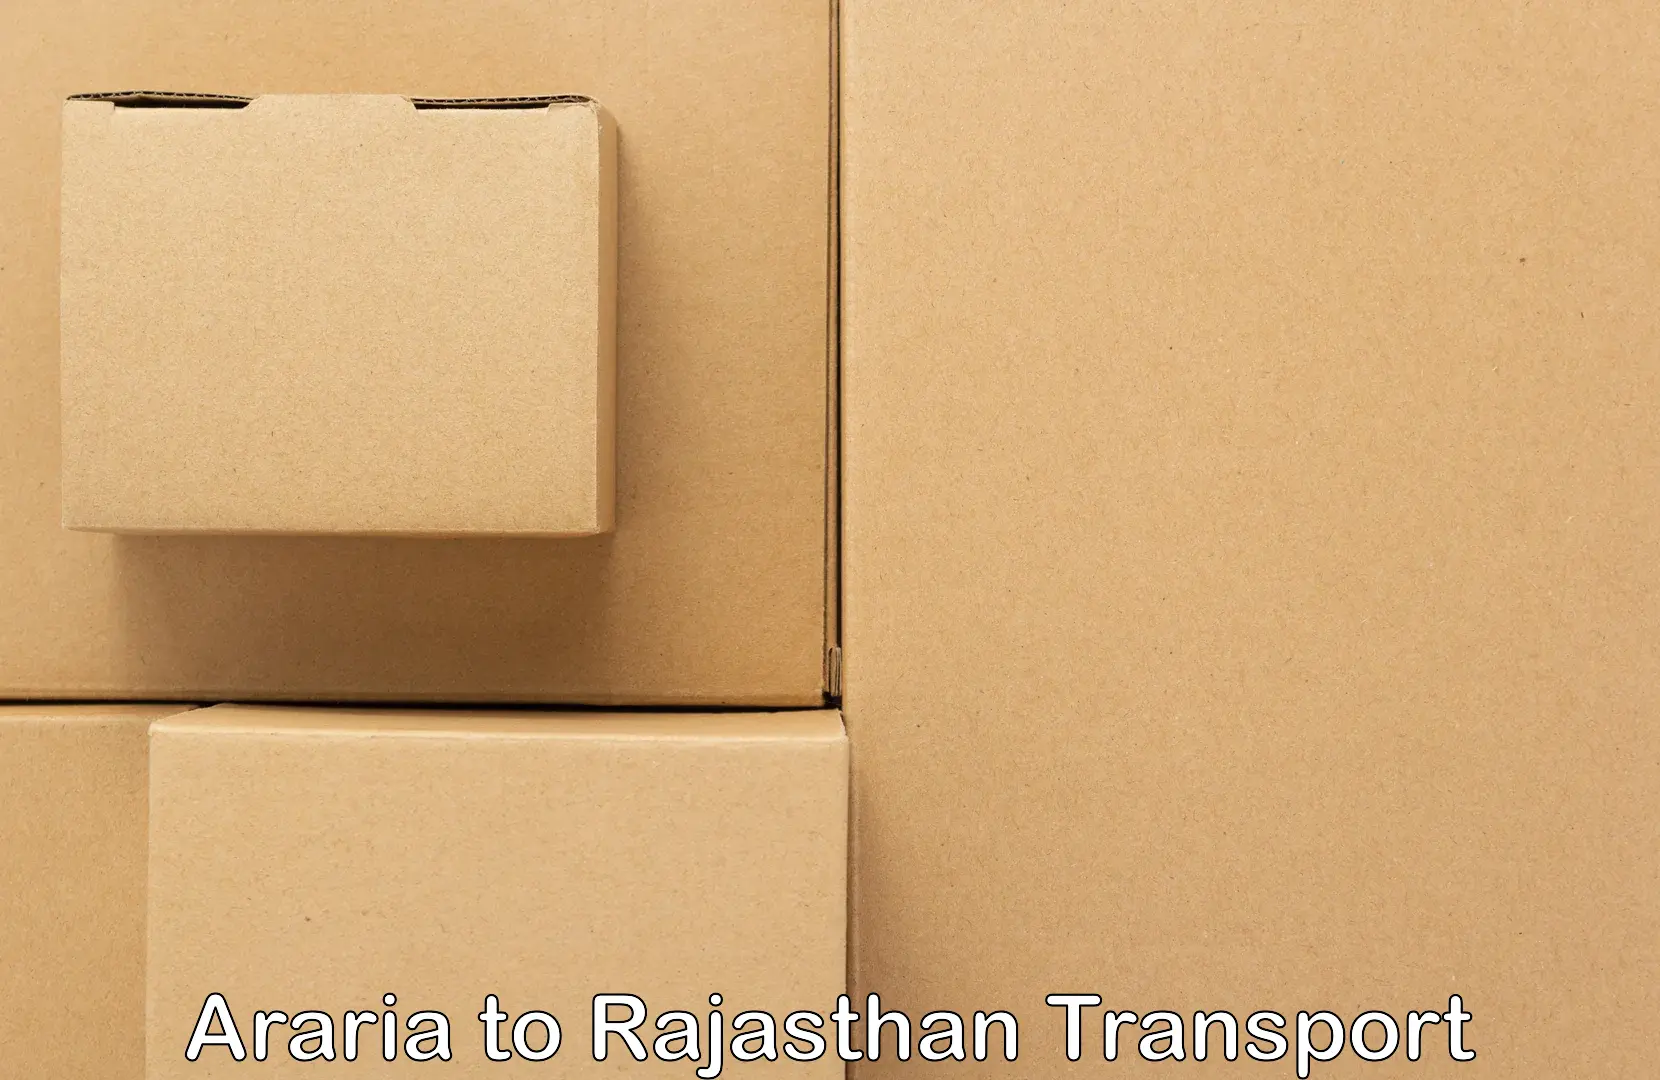 Air freight transport services Araria to Shahpura Jaipur